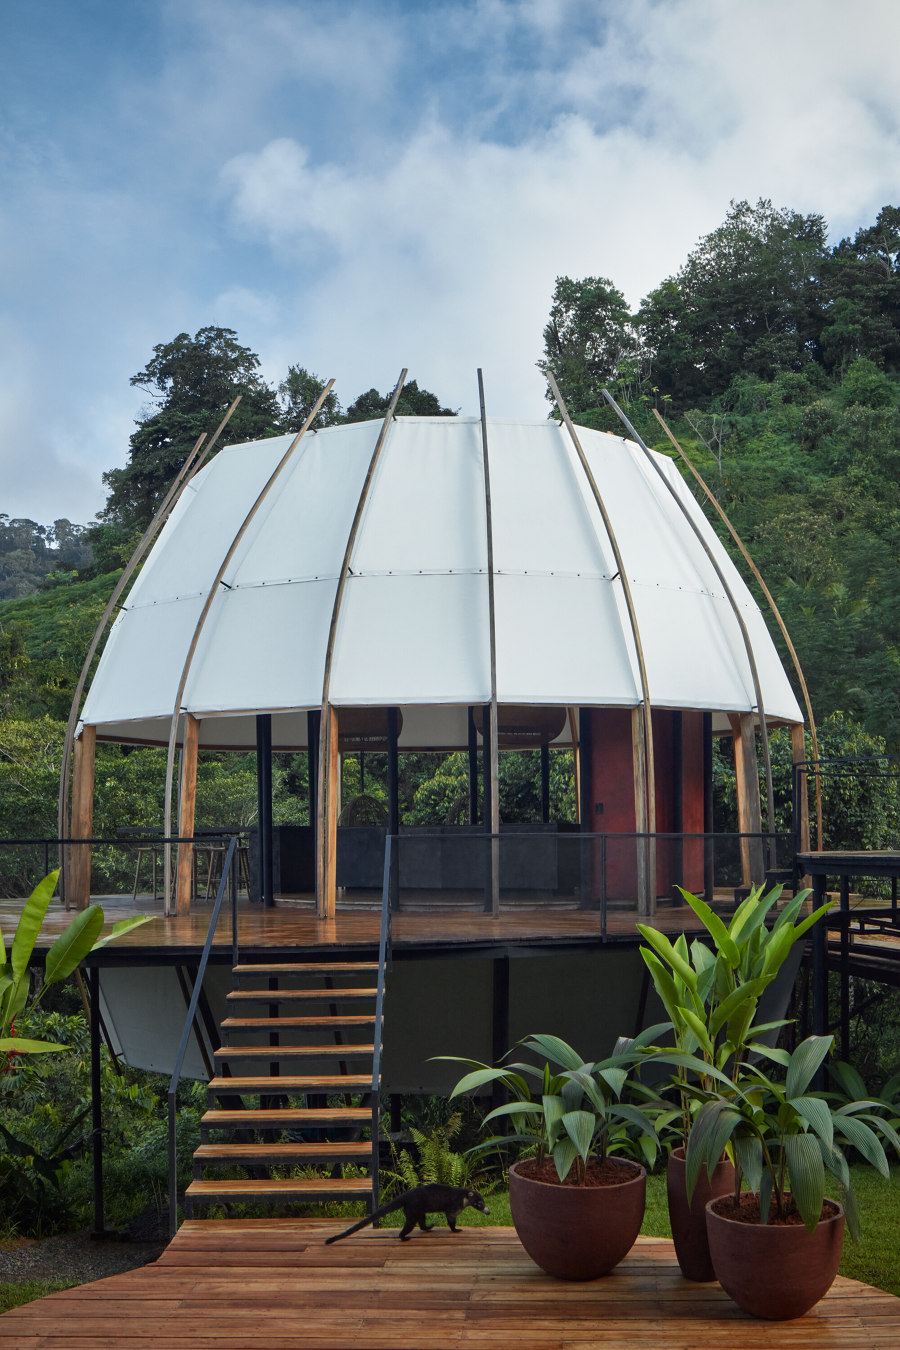 COCO Art Villas Costa Rica de Archwerk+Formafatal | Hoteles